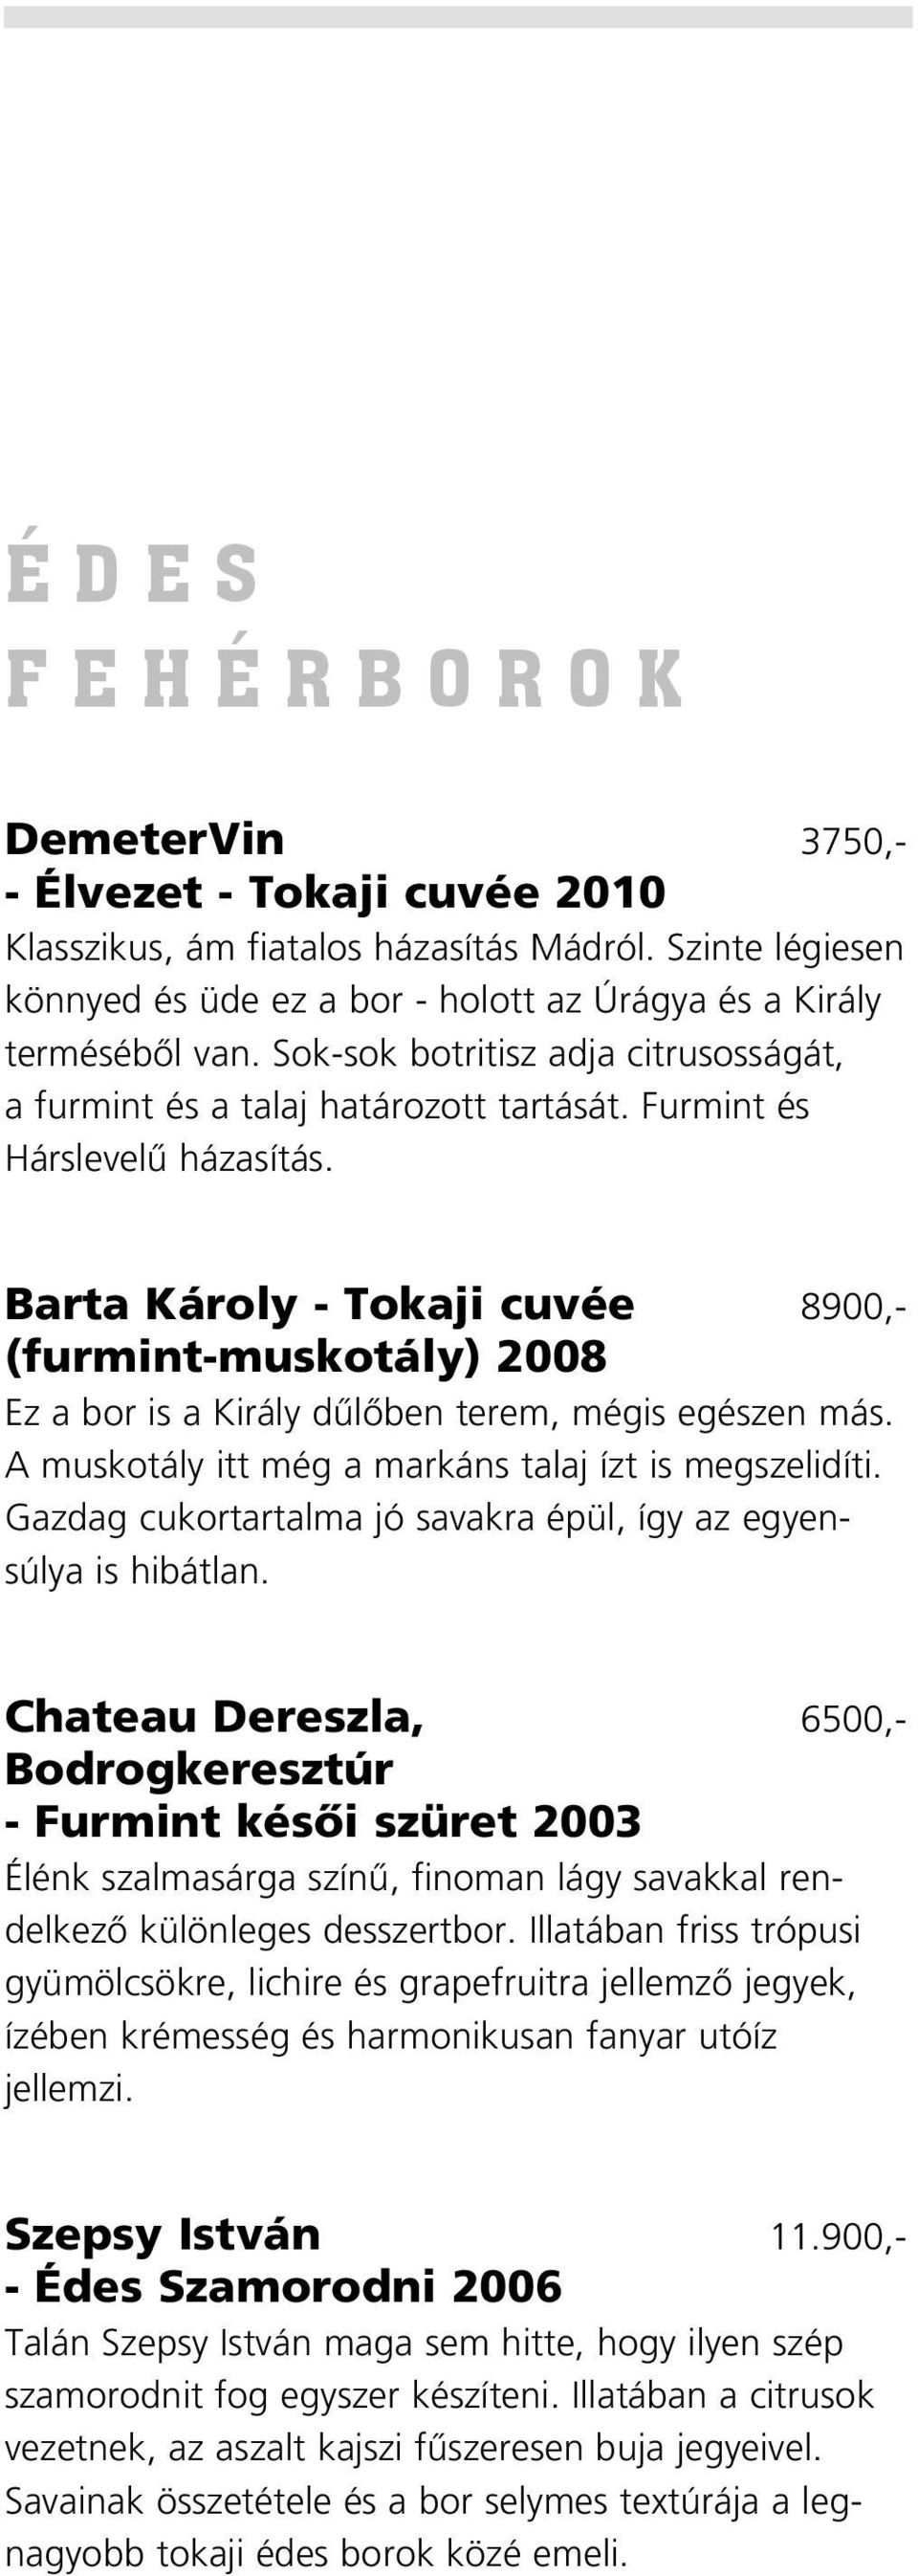 Barta Károly - Tokaji cuvée 8900,- (furmint-muskotály) 2008 Ez a bor is a Király dûlôben terem, mégis egészen más. A muskotály itt még a markáns talaj ízt is megszelidíti.